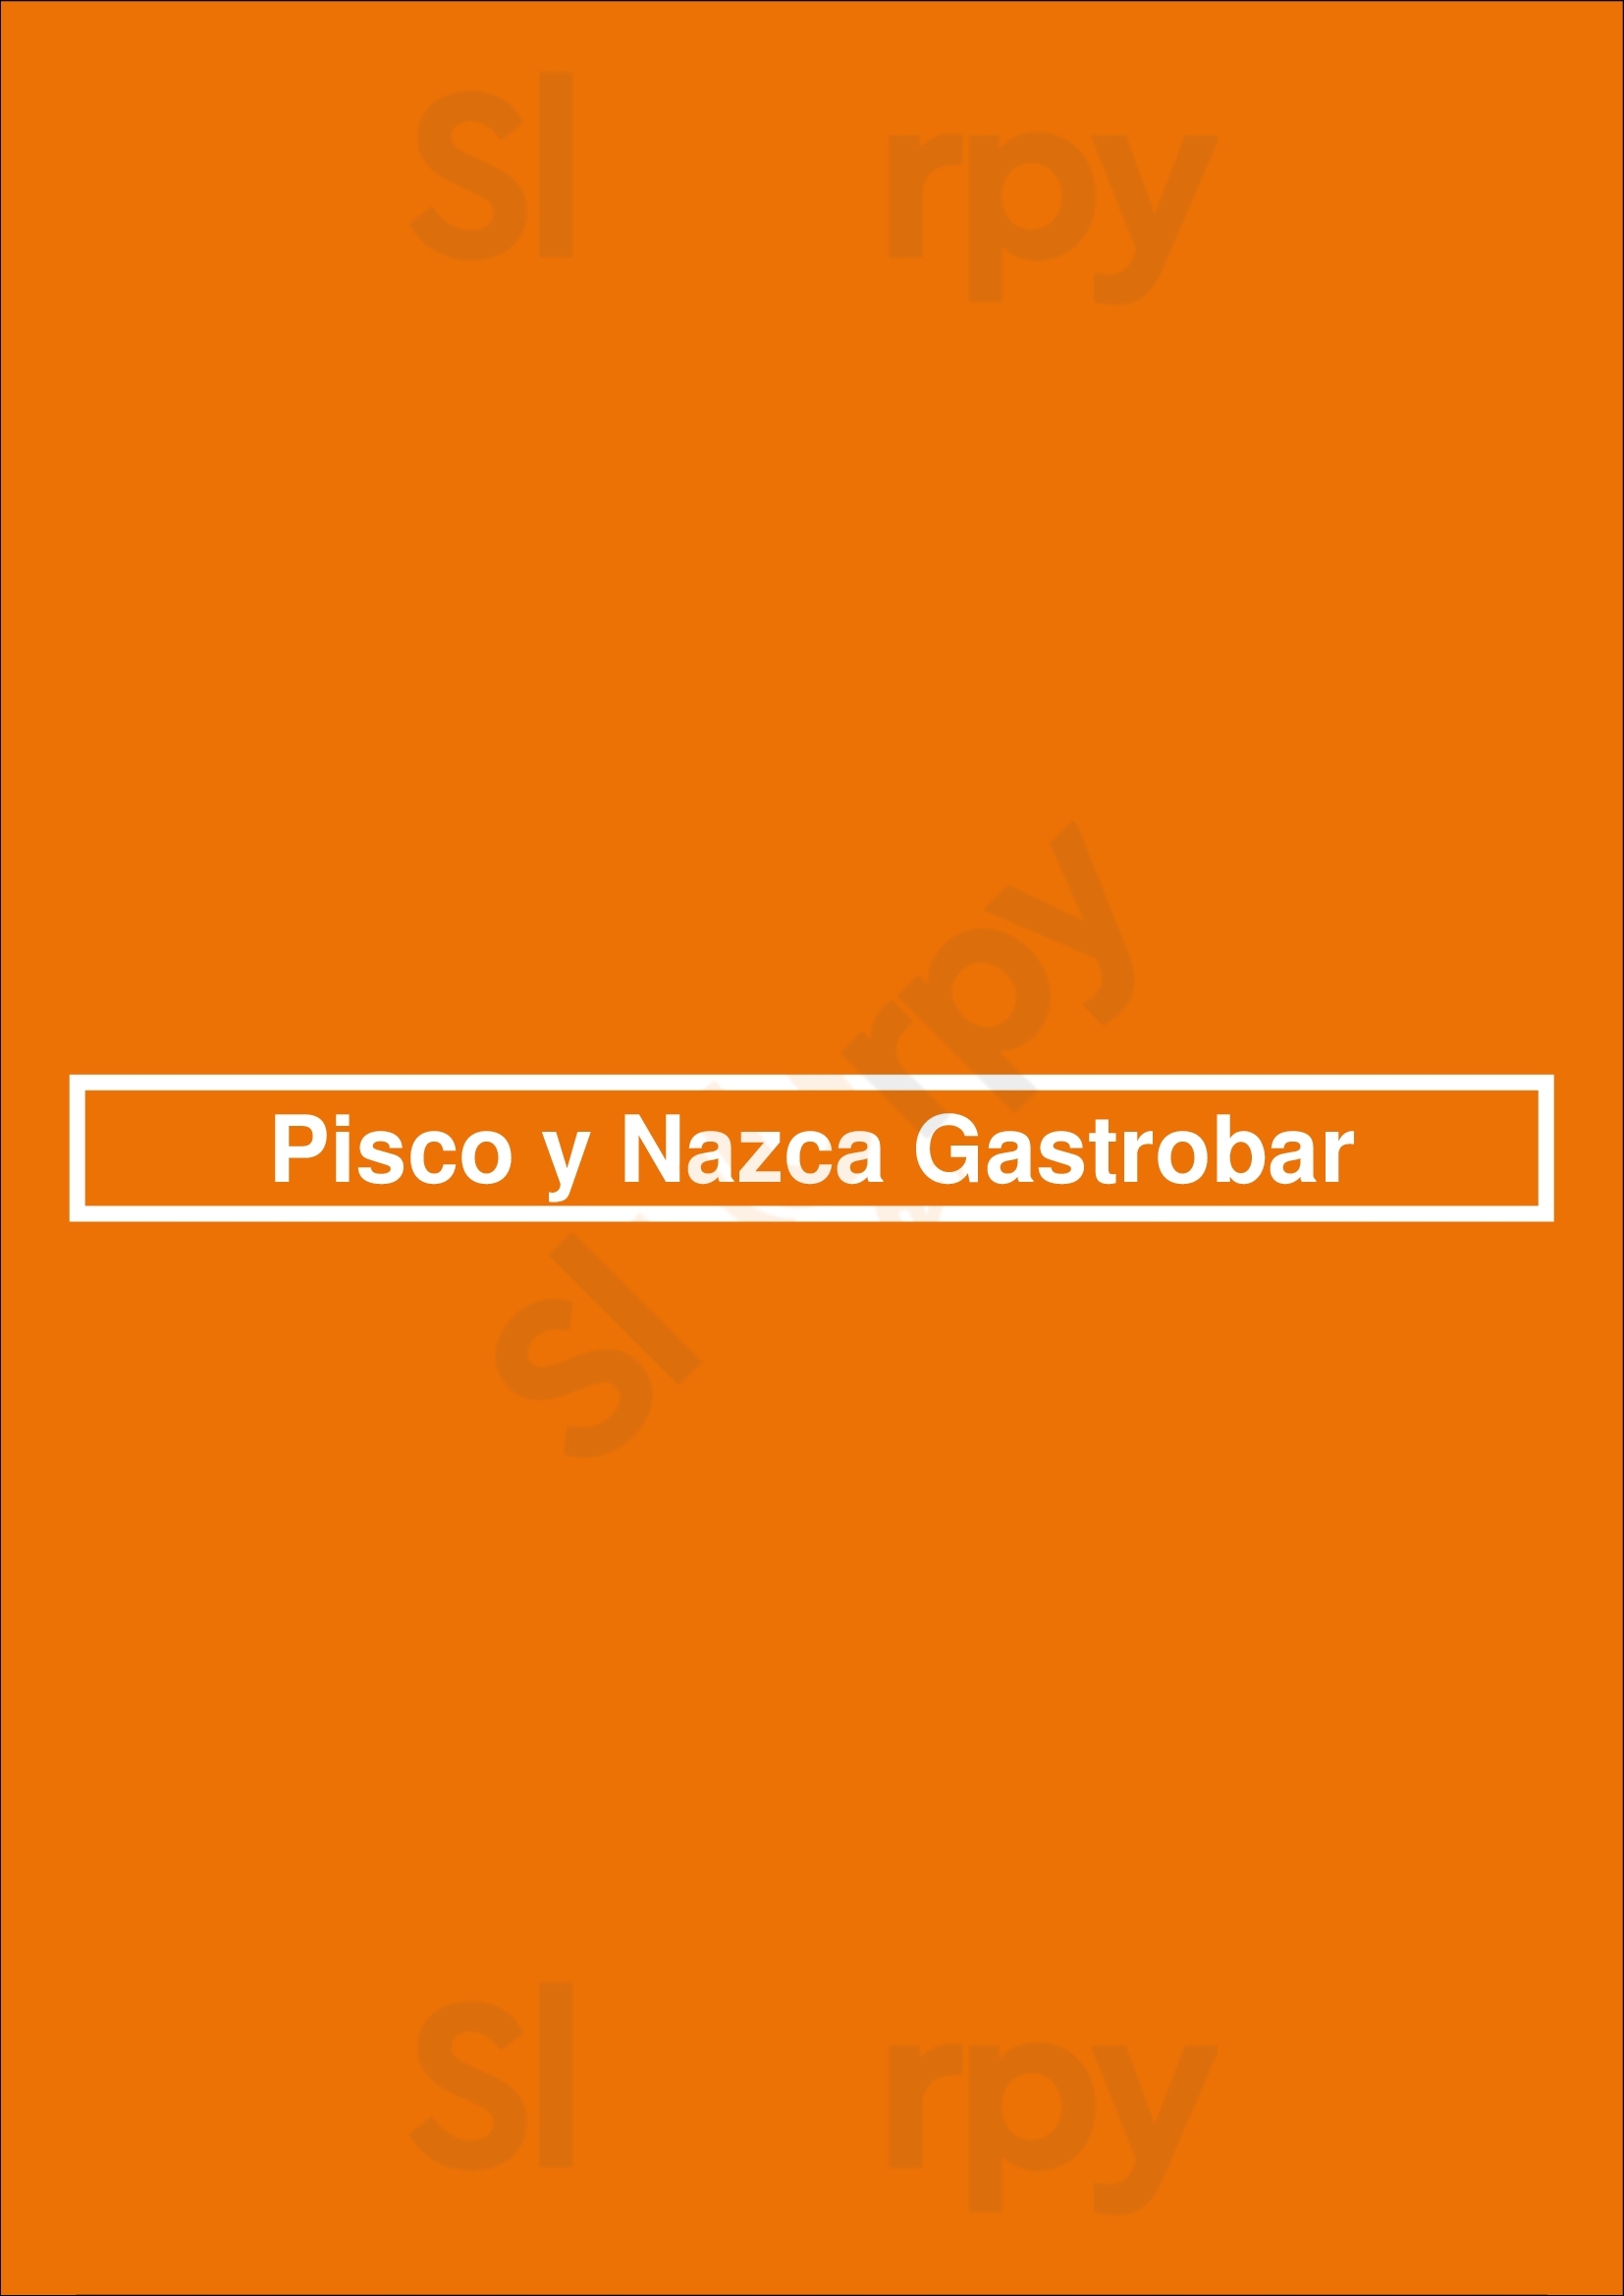 Pisco Y Nazca Washington DC Menu - 1